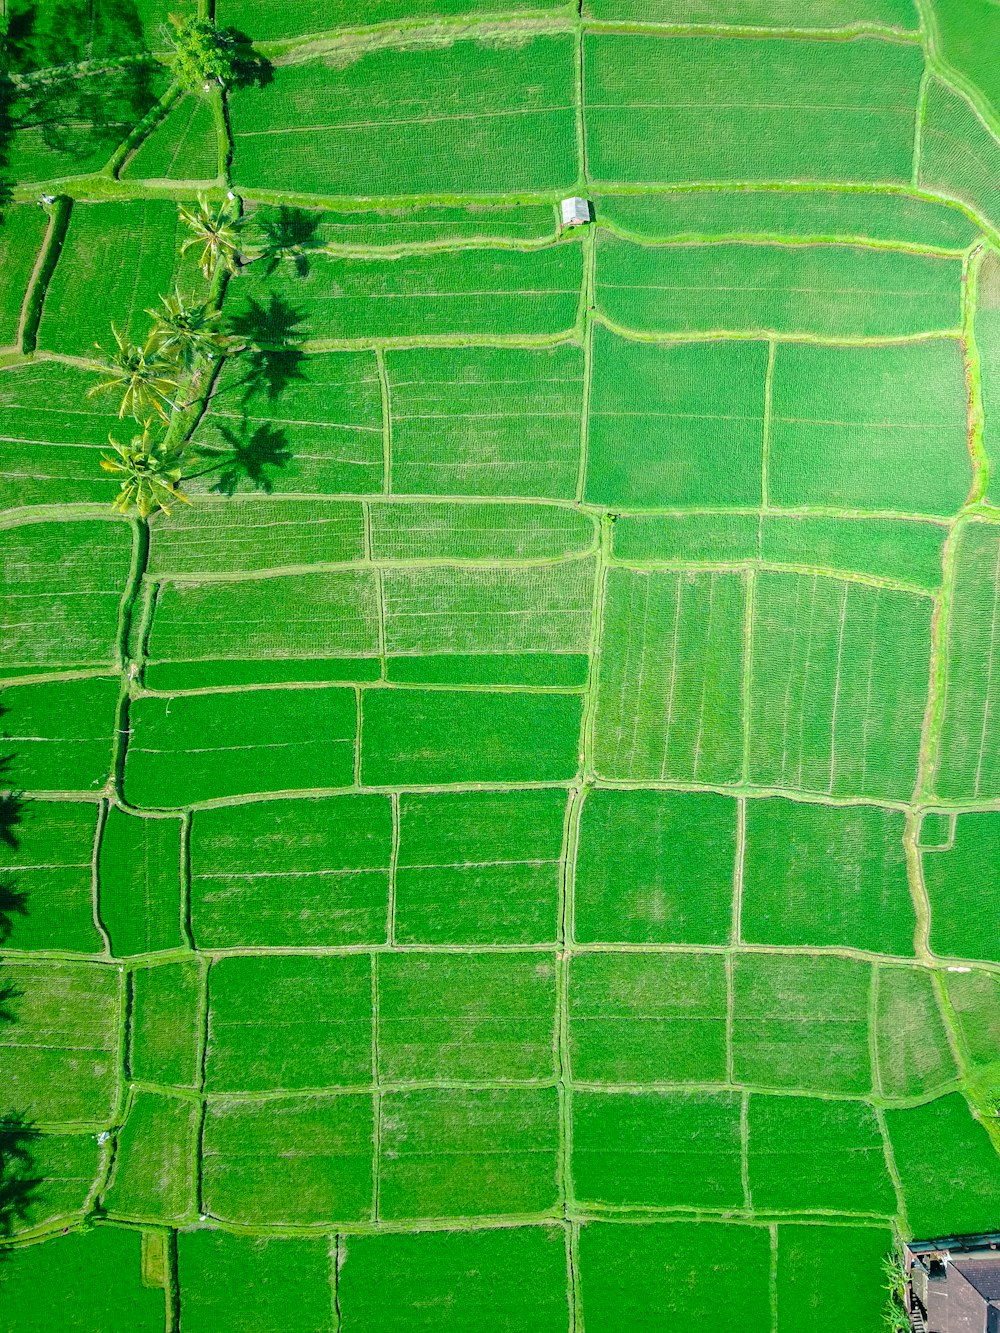 Vista aérea do arrozal